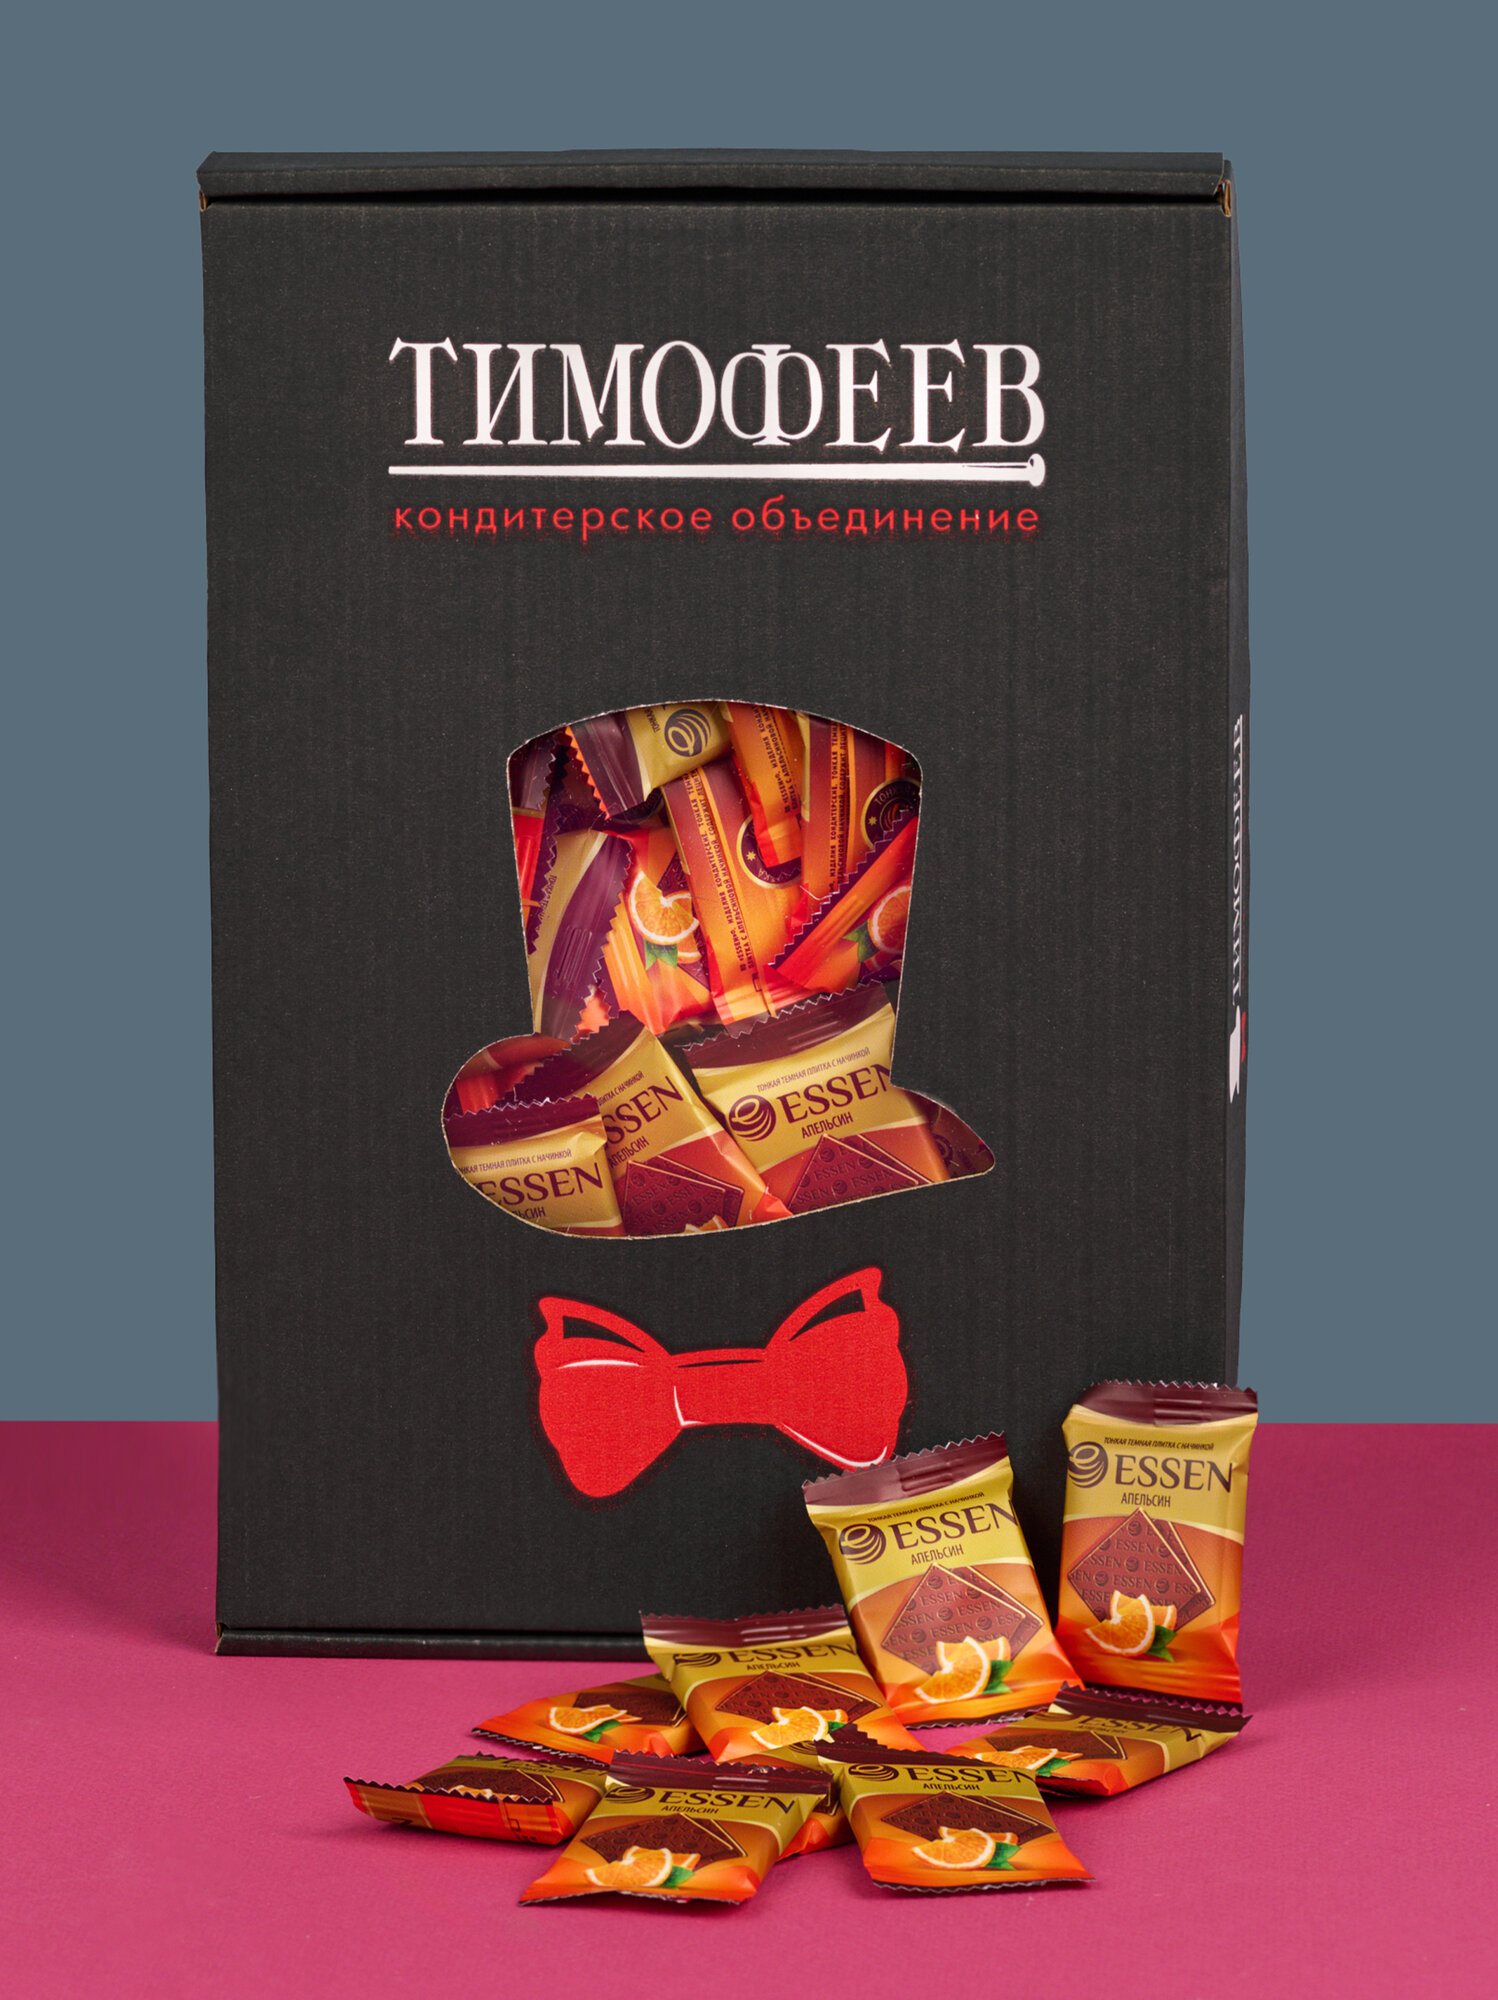 Подарочный набор конфет Шоколашки апельсиновым вкусом" от бренда "Тимофеев ко